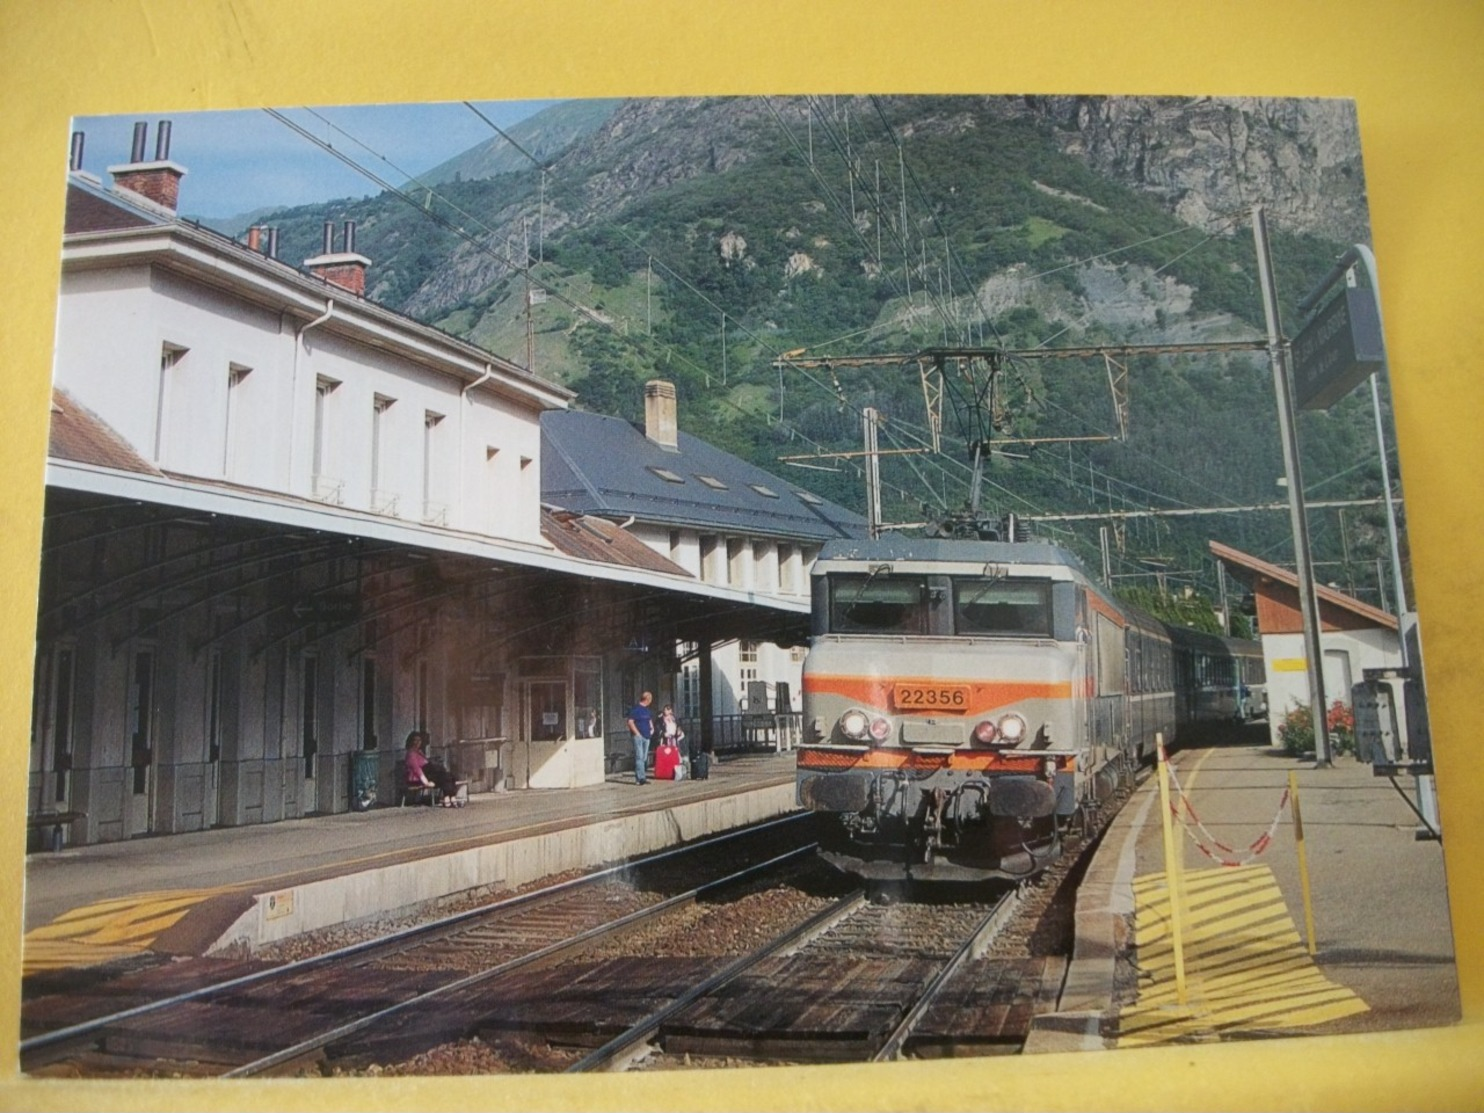 TRAIN 2447 - CPM. LA BB 22356, UN TER LYON PART DIEU-MODANE MARQUE L'ARRET EN GARE DE ST JEAN DE MAURIENNE. JUIN 2006. - Stations With Trains